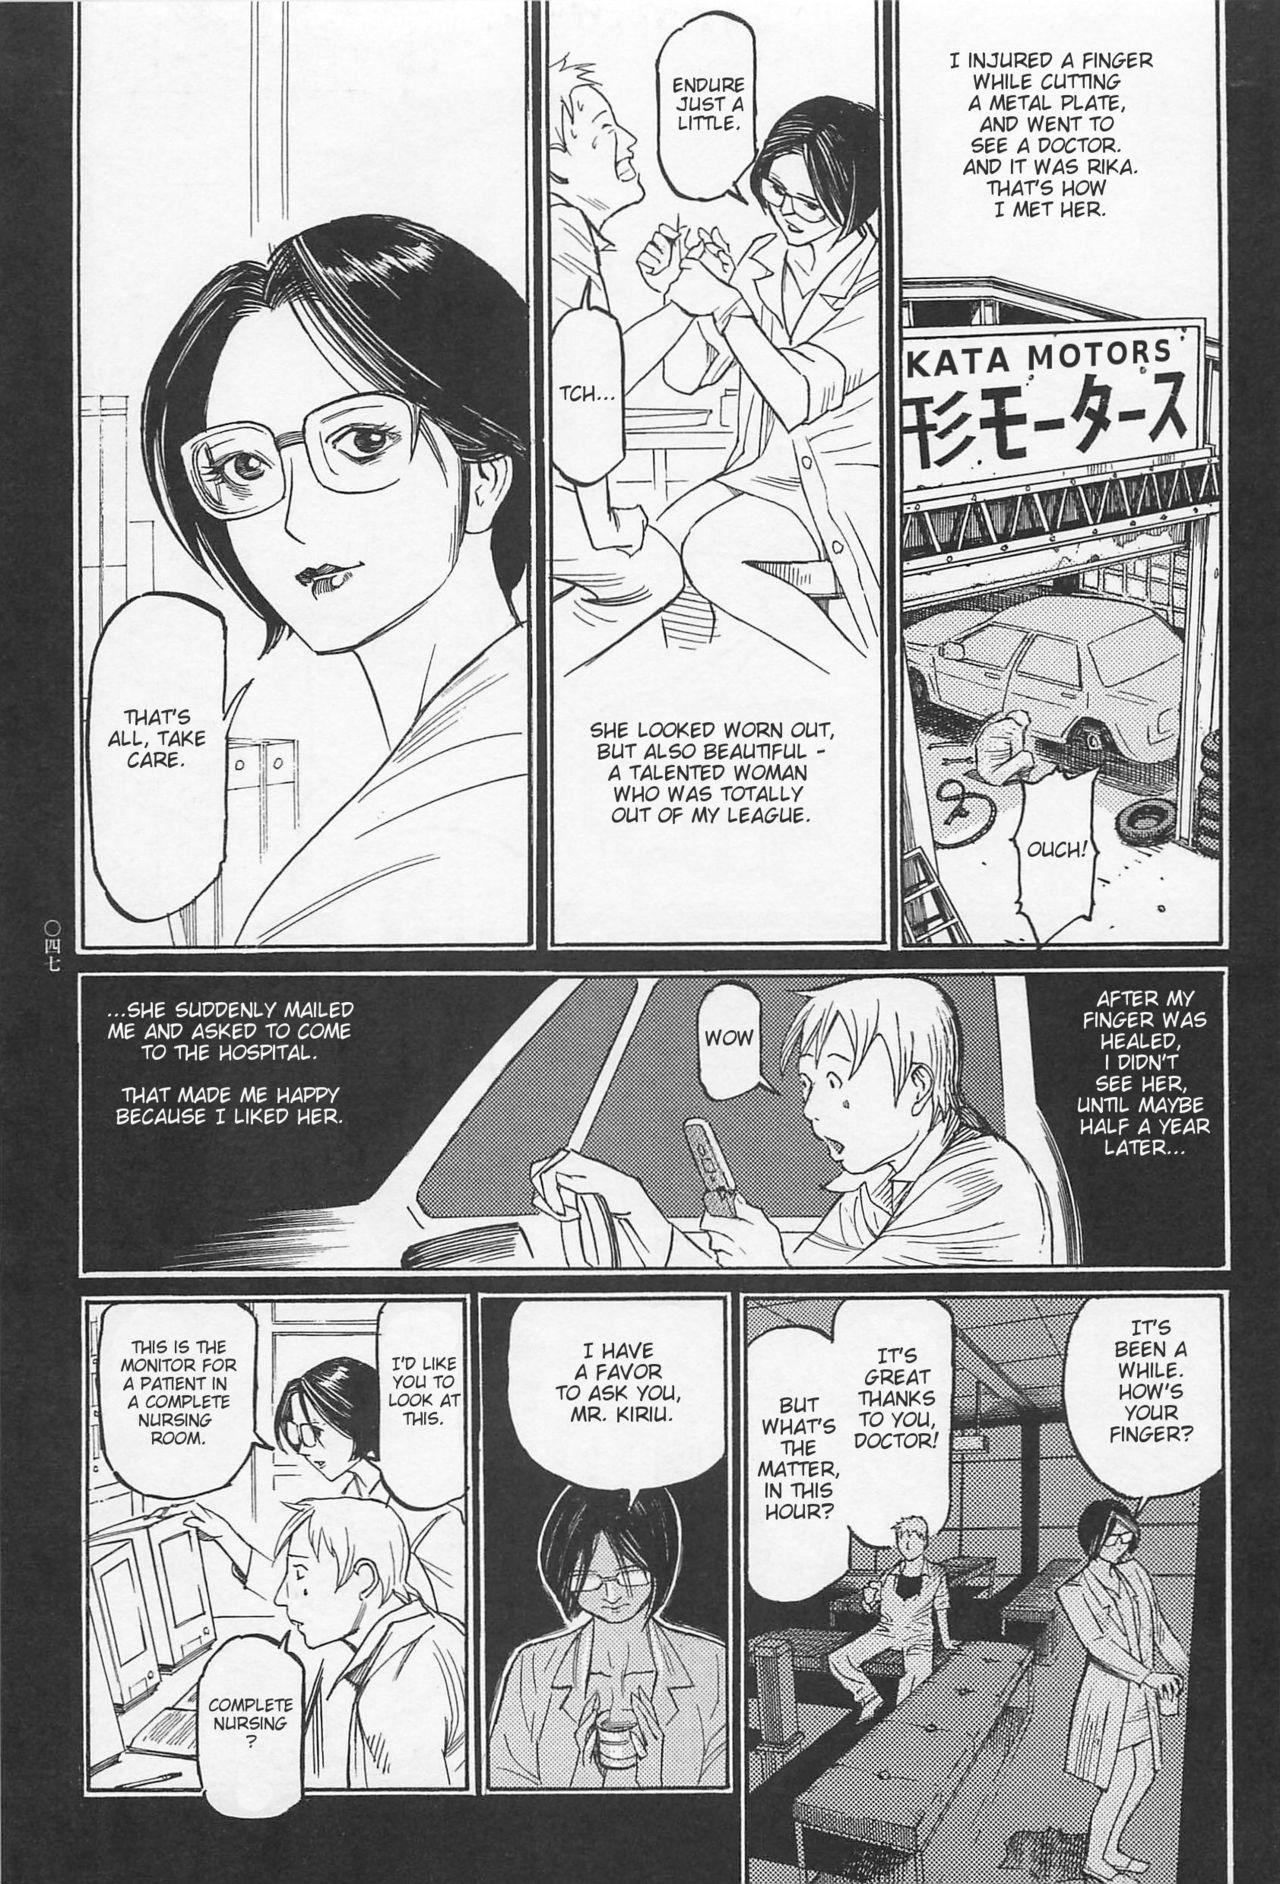 [OHKOSHI Koutarou] - Detective Investigating Bizarre Case (Ryouki Keiji MARUSAI) - [ENGLISH] 47